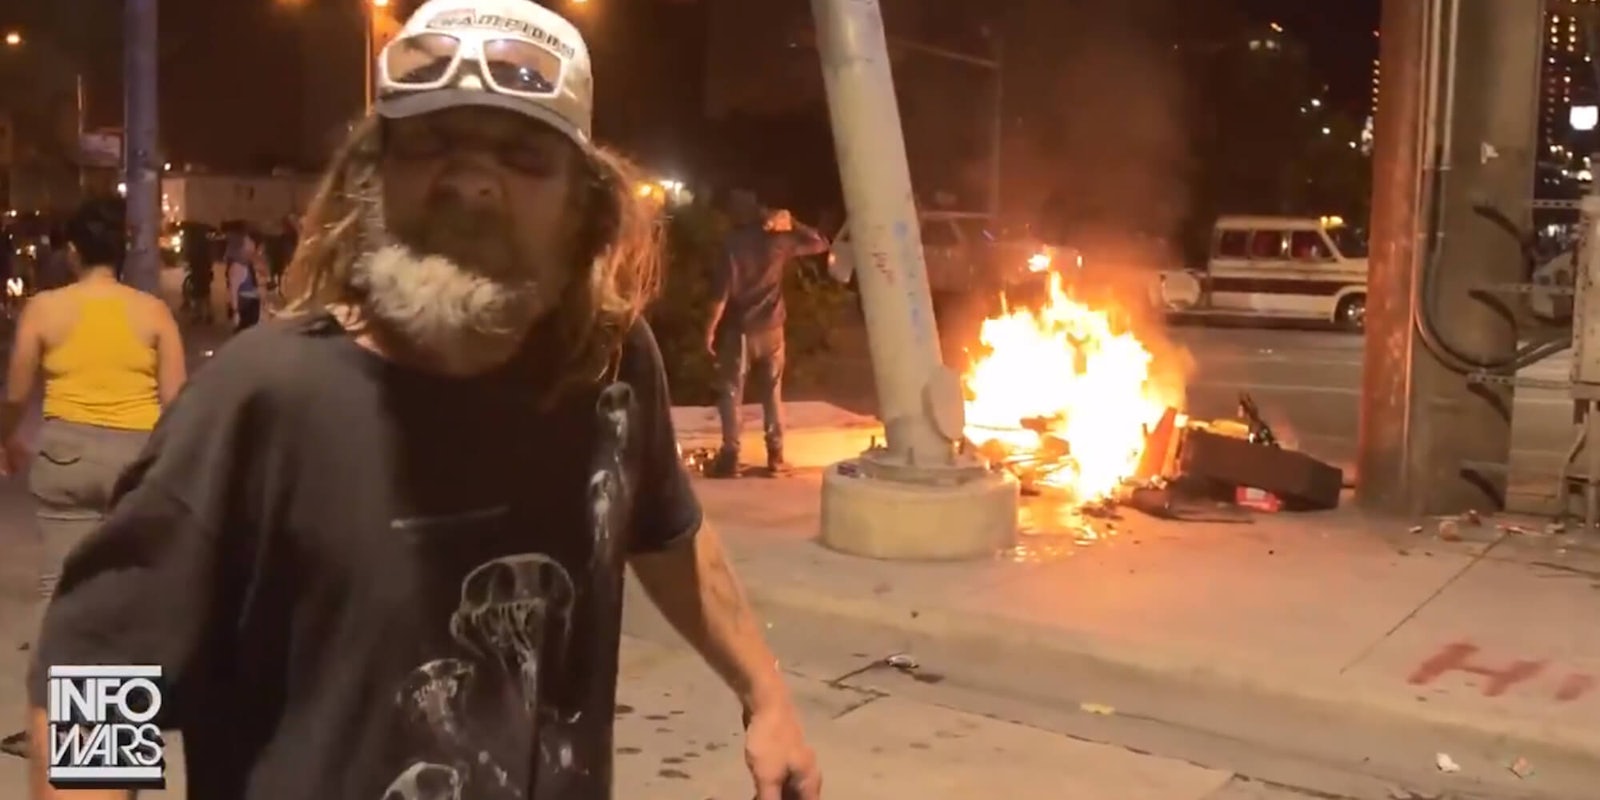 infowars austin homeless man's belonging burn during protest